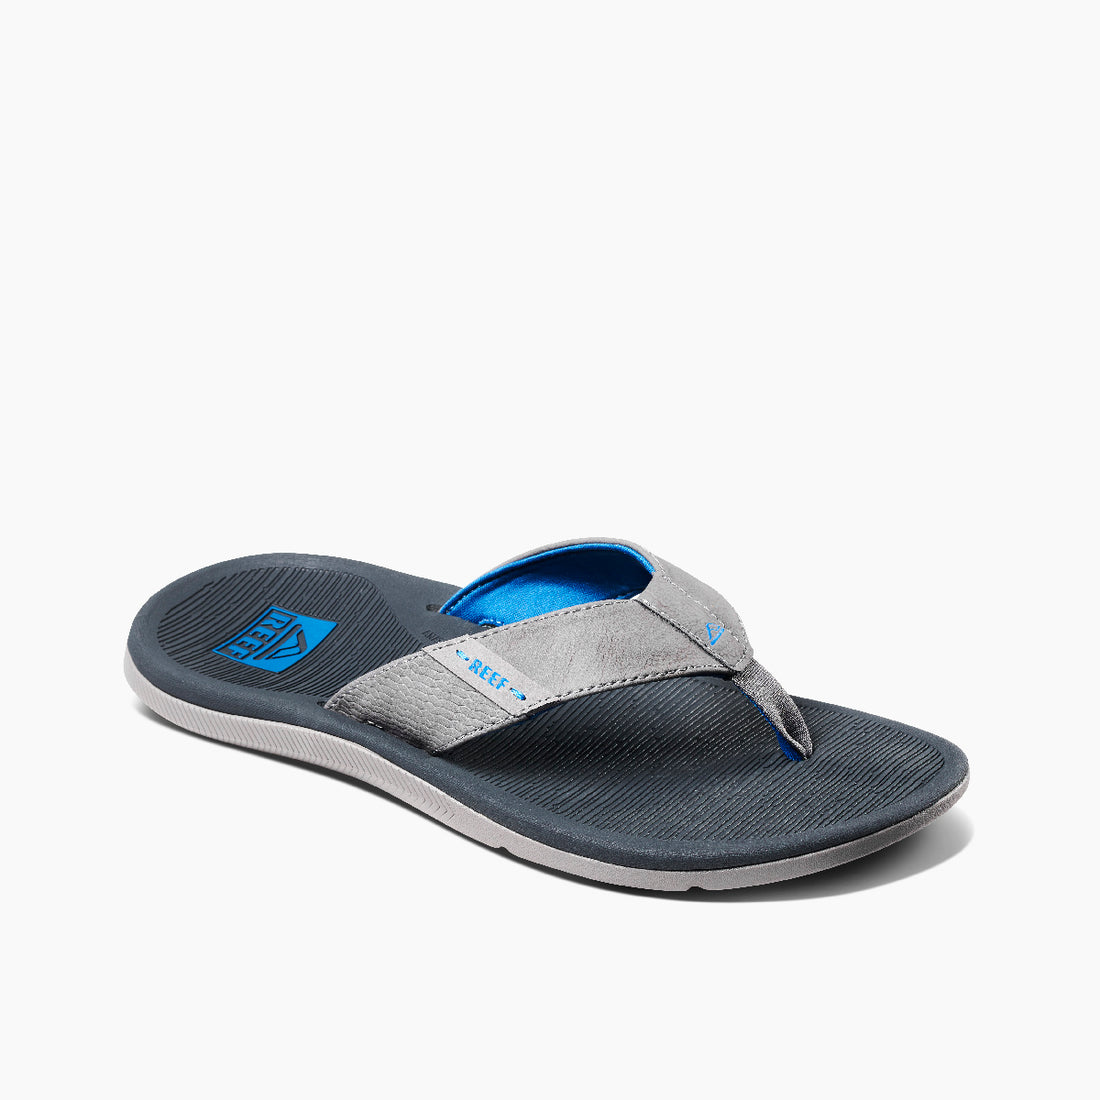 Reef Men's Santa Ana Footwear Reef Blue/Light Grey 6 